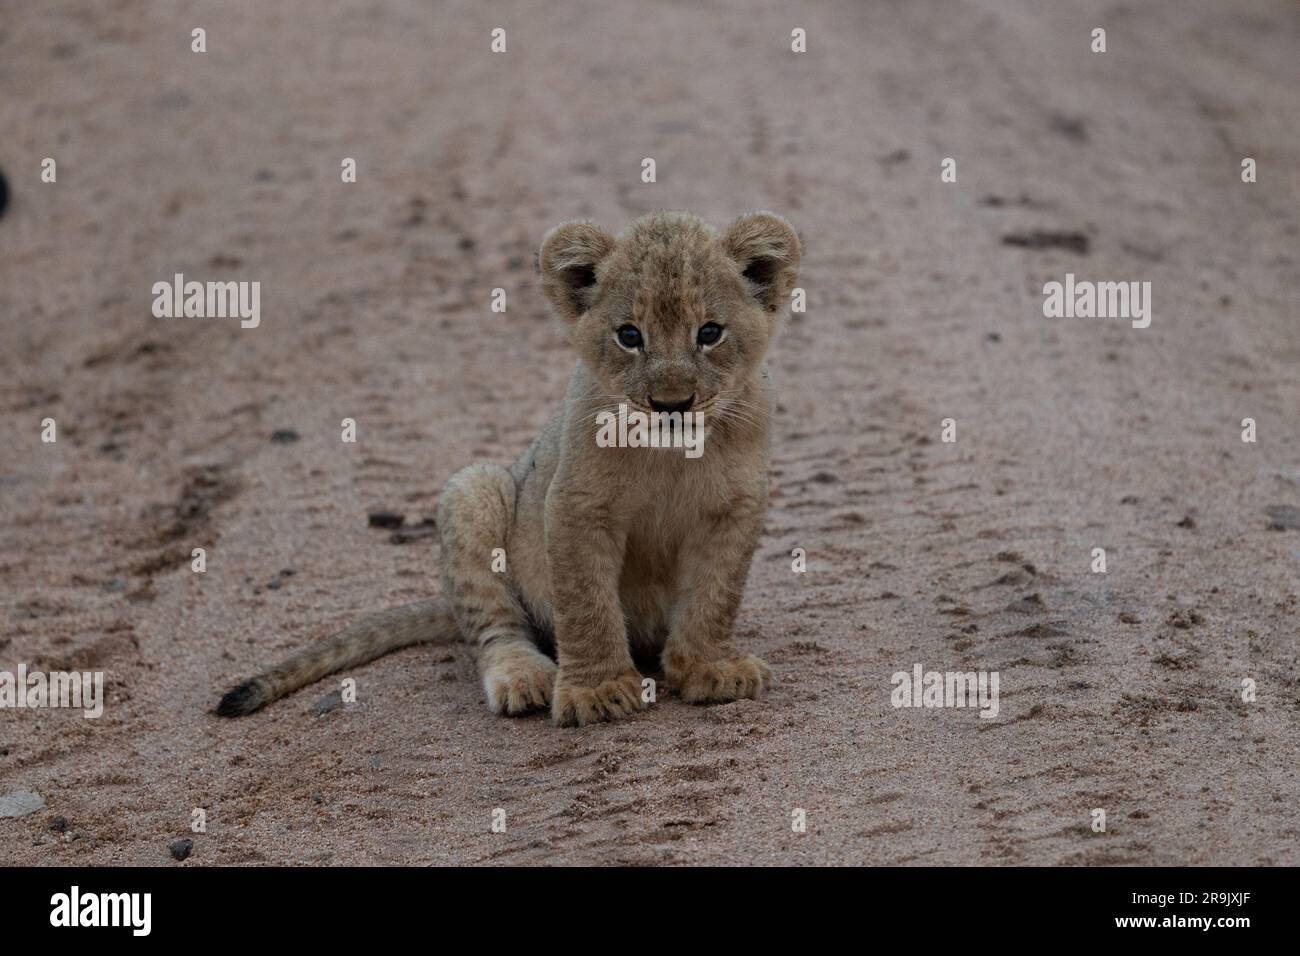 Un lion cub, Panthera leo, assis sur le sol, regard direct. Banque D'Images